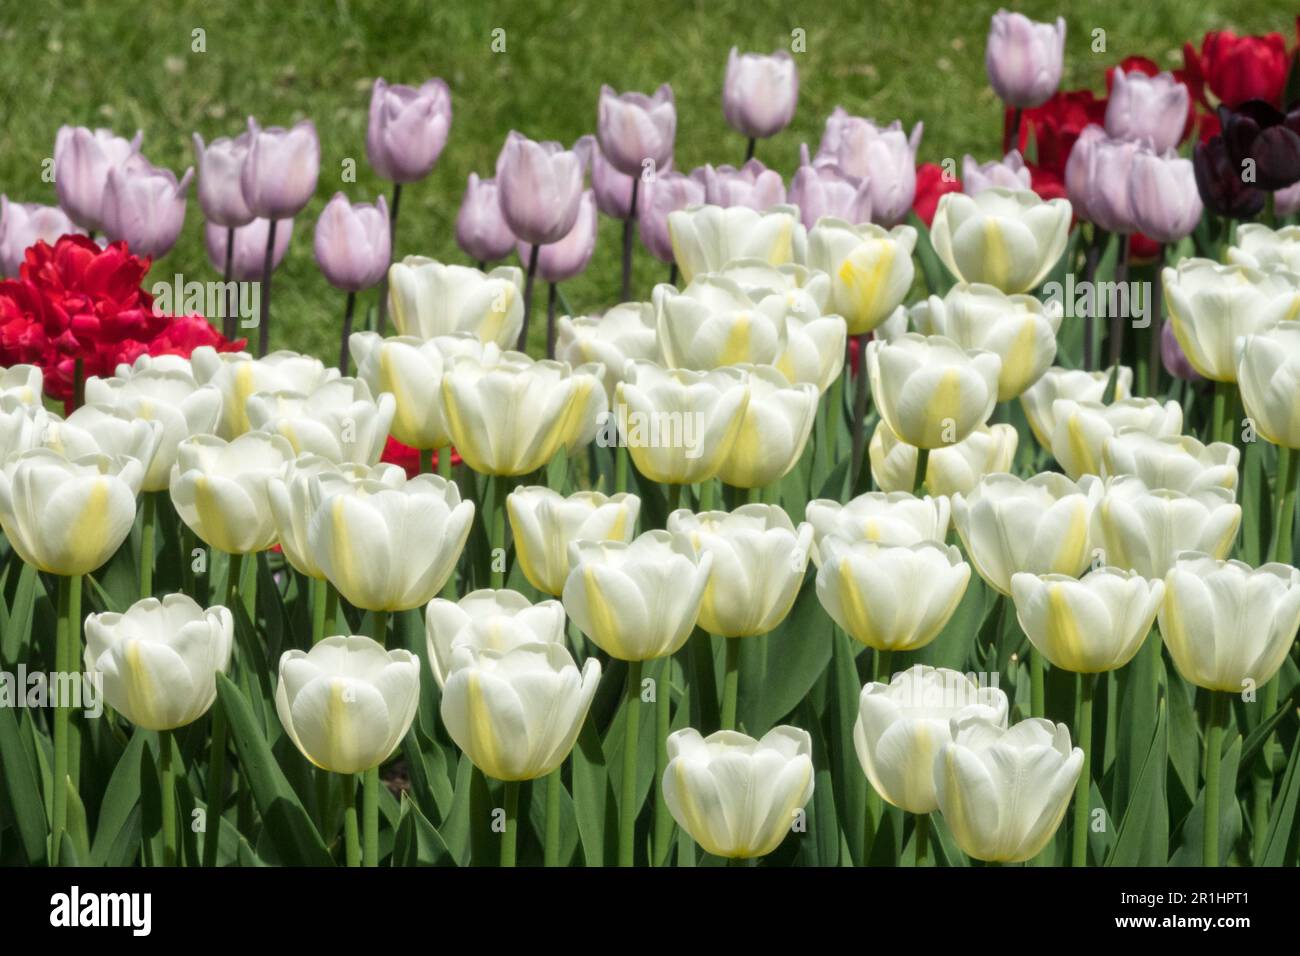 Gemischt, Weiße Tulpen, Cup-förmig, duftend, einzelne späte Tulpe, Geöffnet, Tulipa „Angels Wish“, Display, Garten Gelb Weiß Rosa Rot Stockfoto